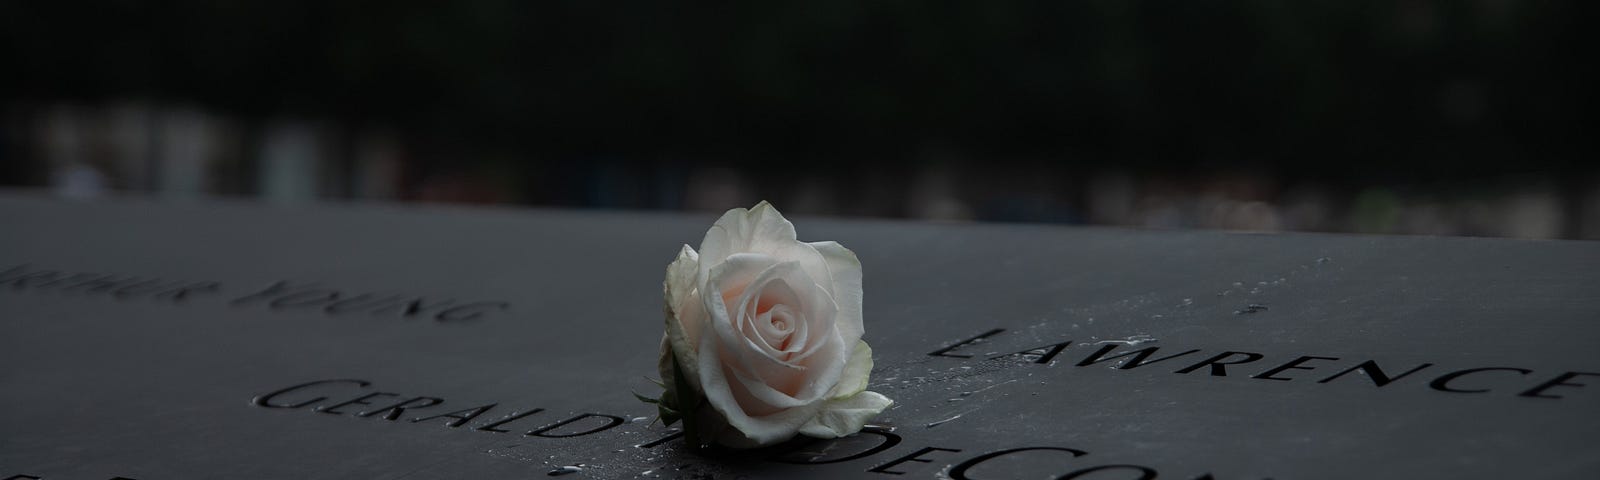 White rose on 9/11 memorial